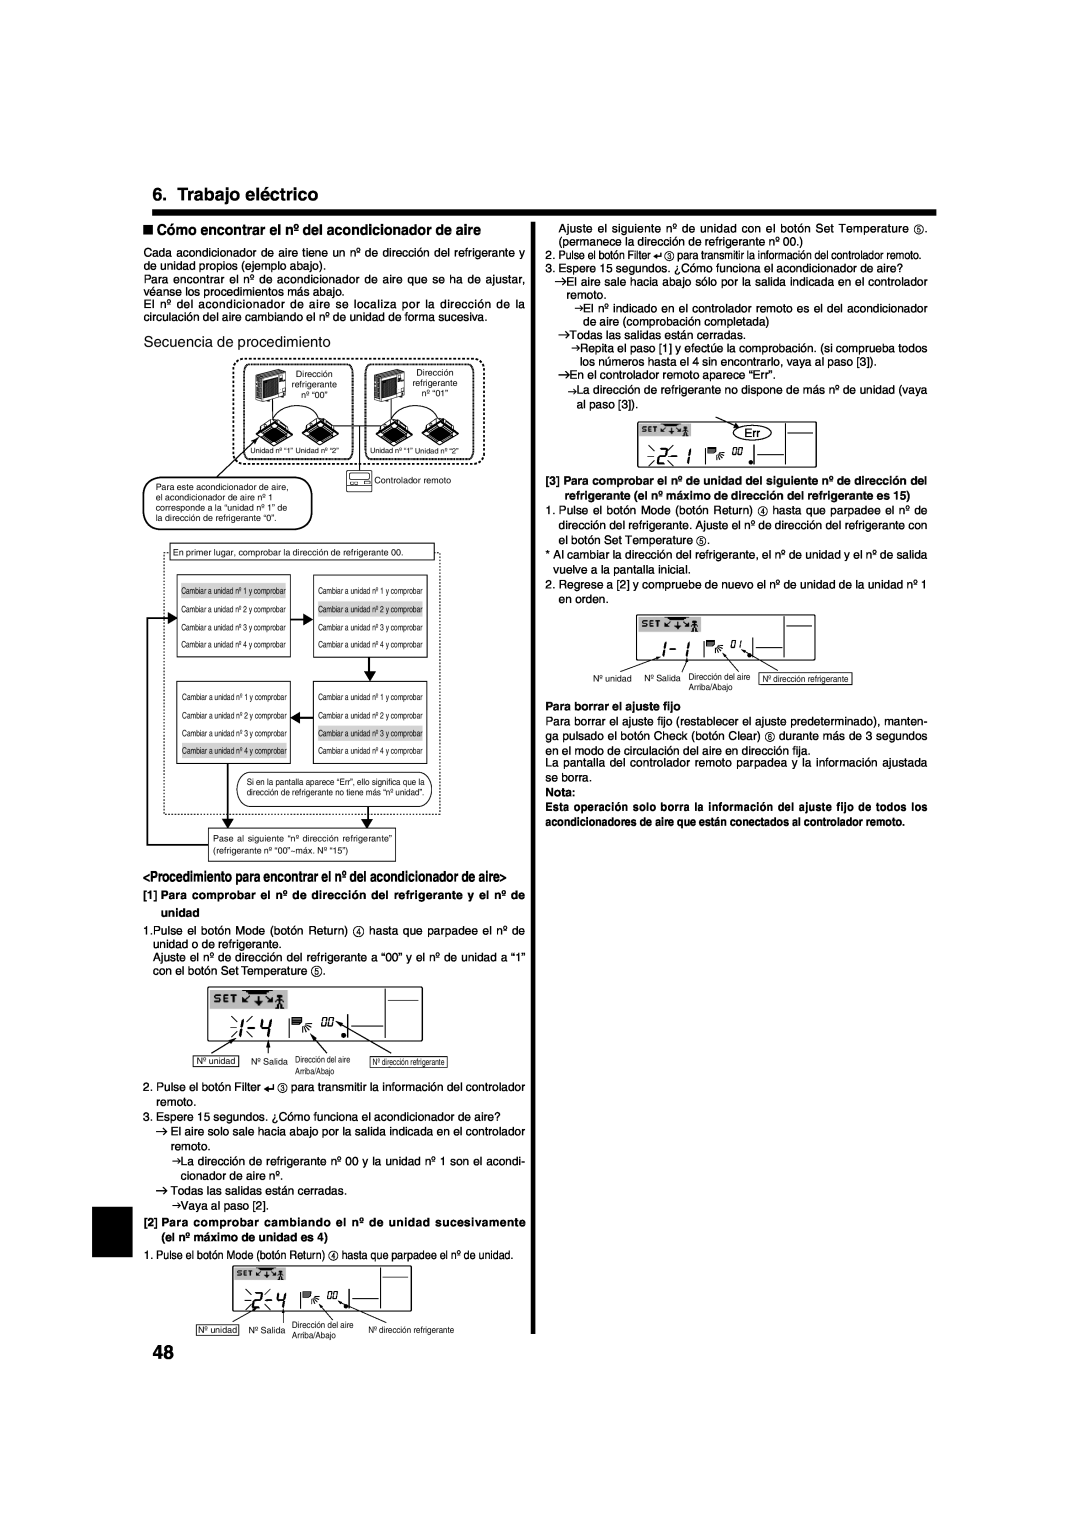 Mitsumi electronic PLA-ABA Cómo encontrar el nº del acondicionador de aire, SecuenciaFlow of procedude procedimientoe 